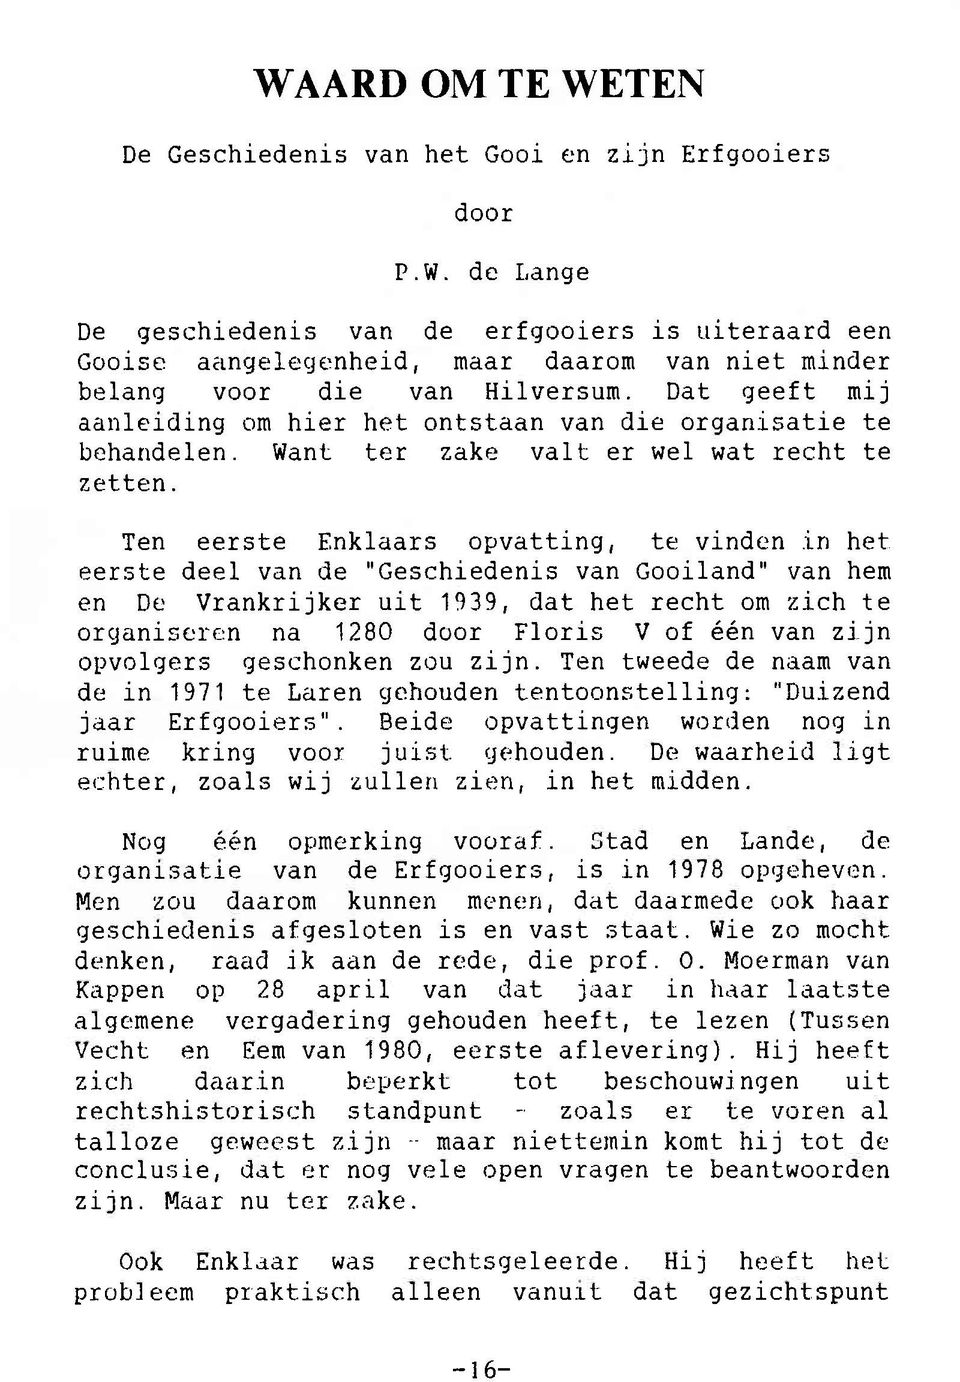 Ten eerste Enklaars opvatting, te vinden in het eerste deel van de "Geschiedenis van Gooiland" van hem en De Vrankrijker uit 1939, dat het recht om zich te organiseren na 1280 door Floris V of één